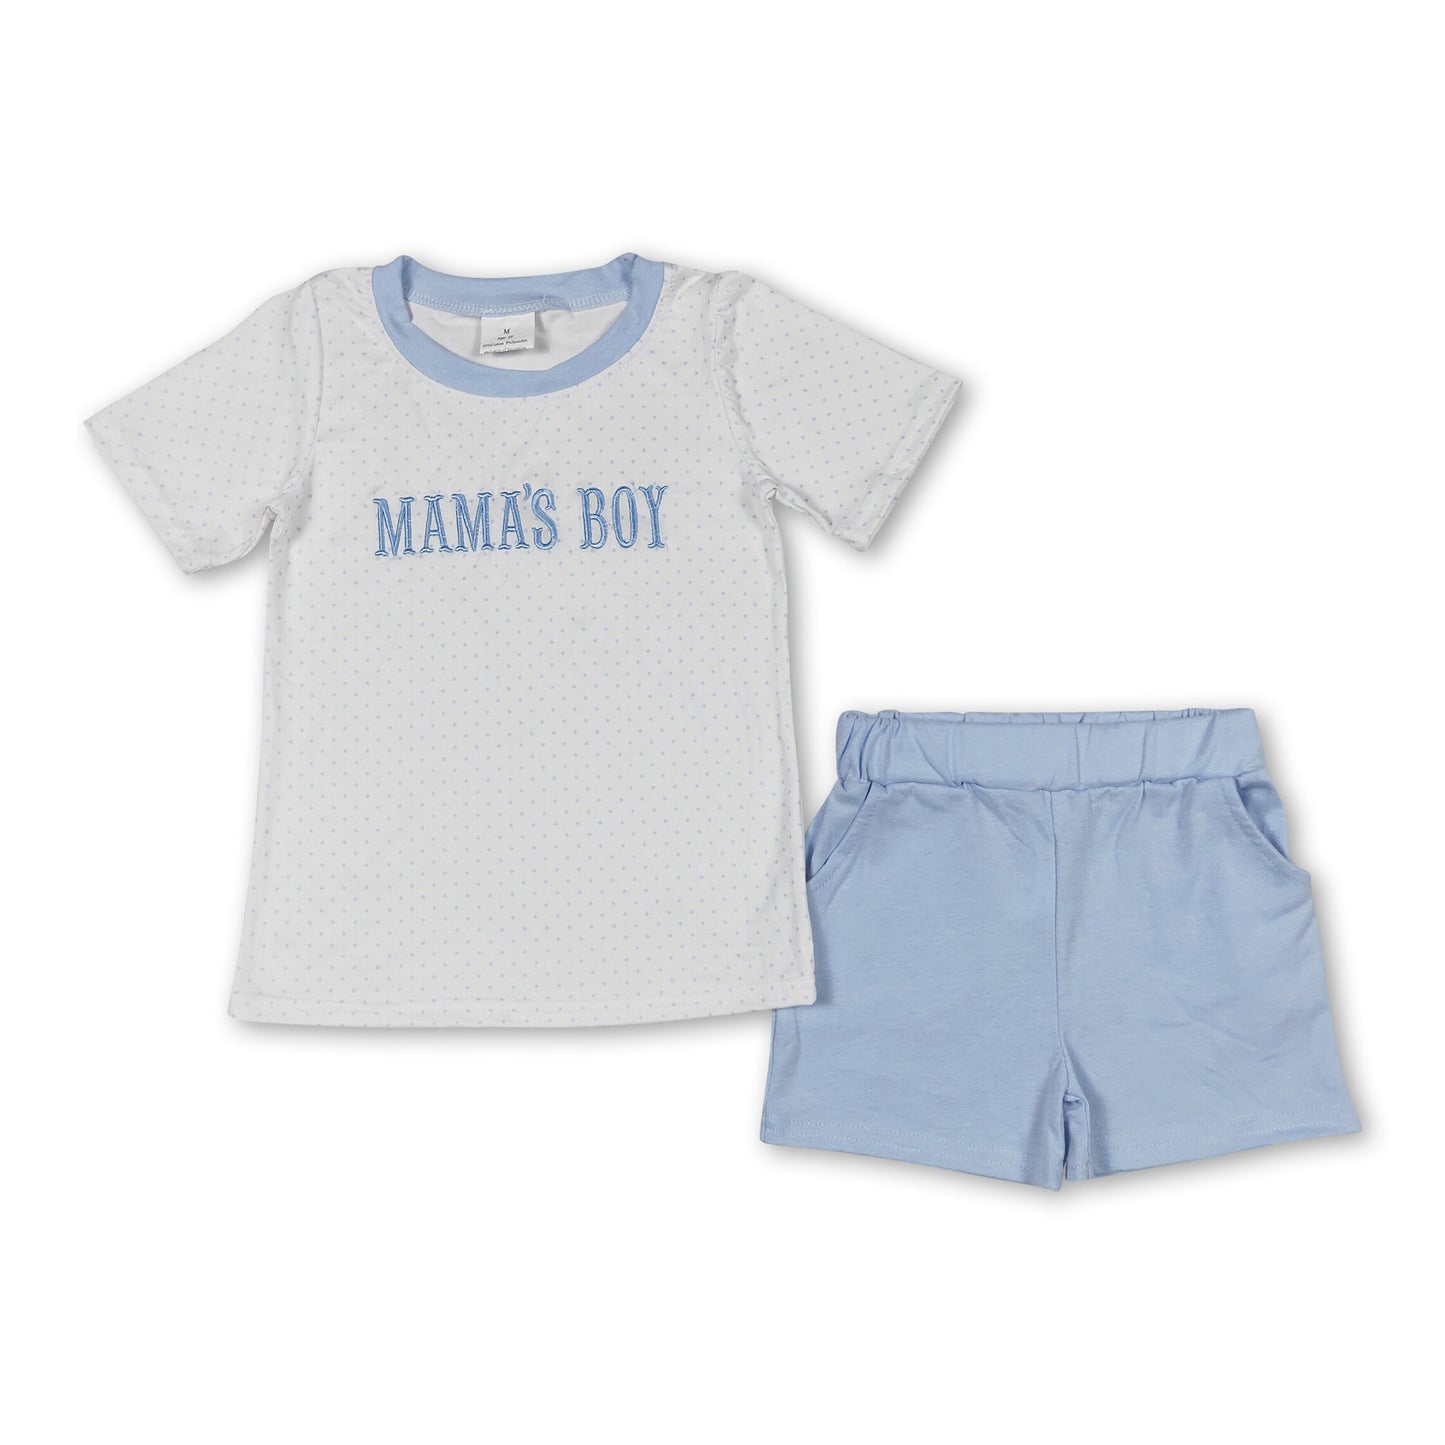 Mama's boy polka dots shirt pocket shorts kids outfits